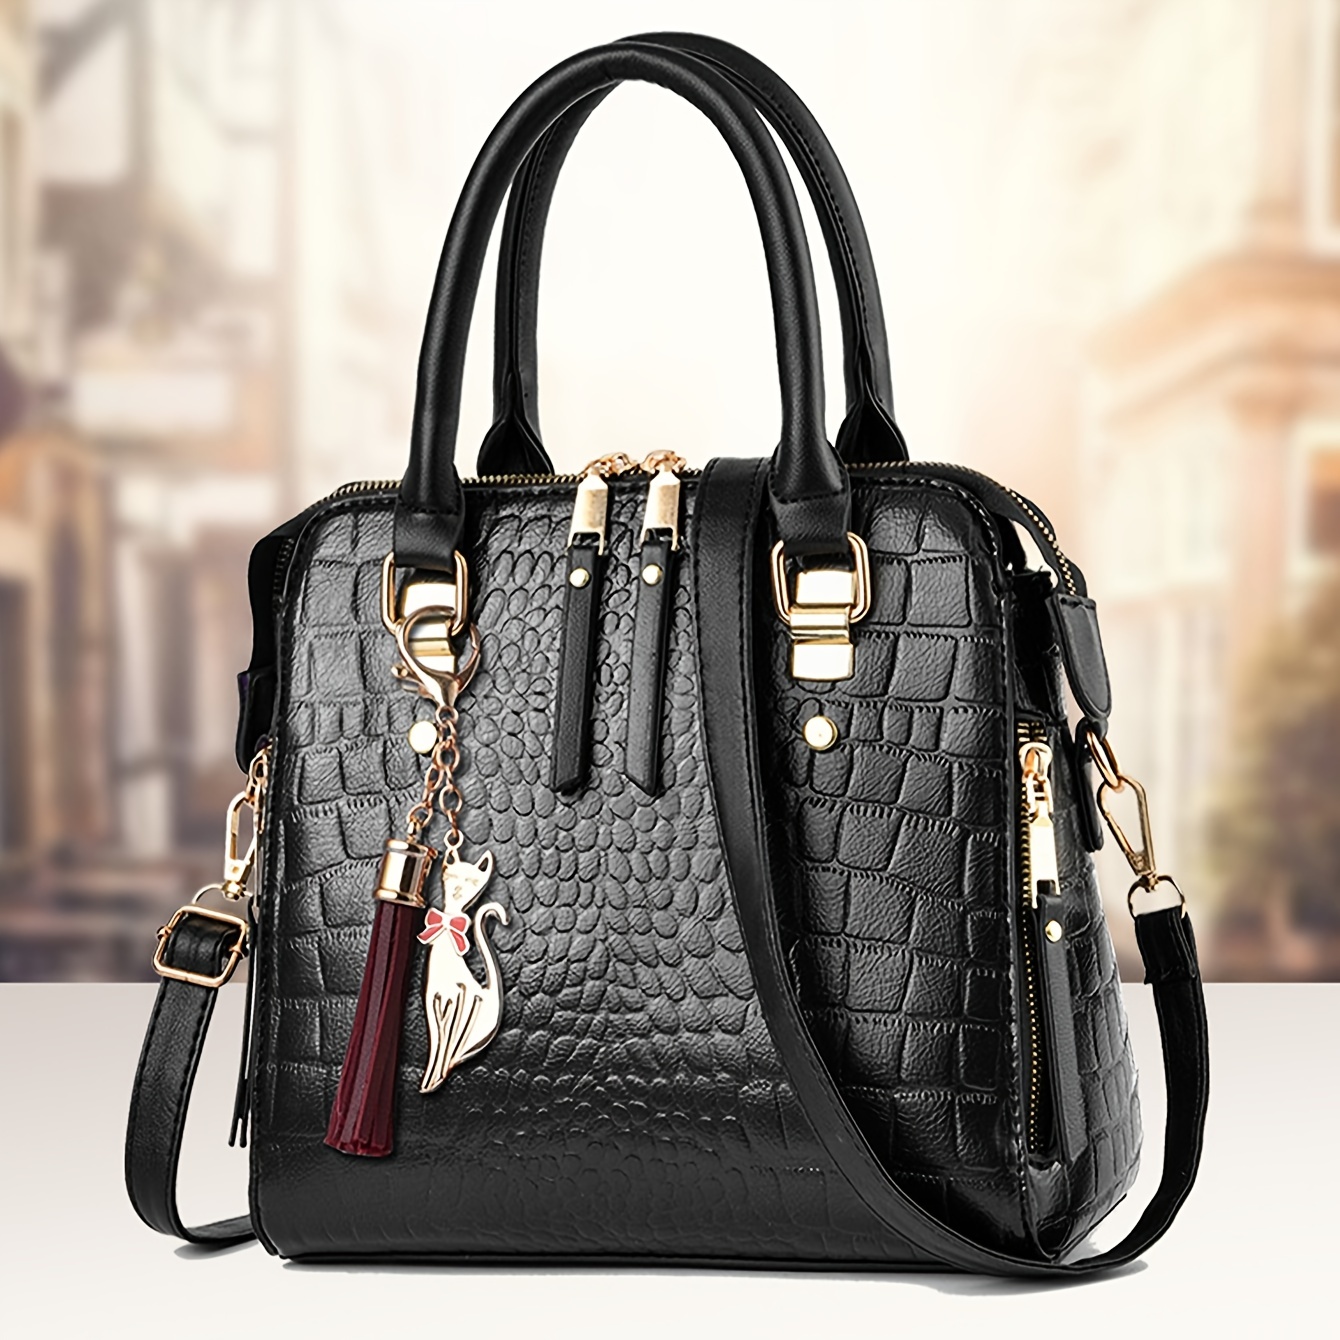 

Vintage Crocodile Pattern Tote Bag, Luxury Top Handle Satchel, Women's Retro Handbag, Shoulder Bag, Crossbody Bag & Purse